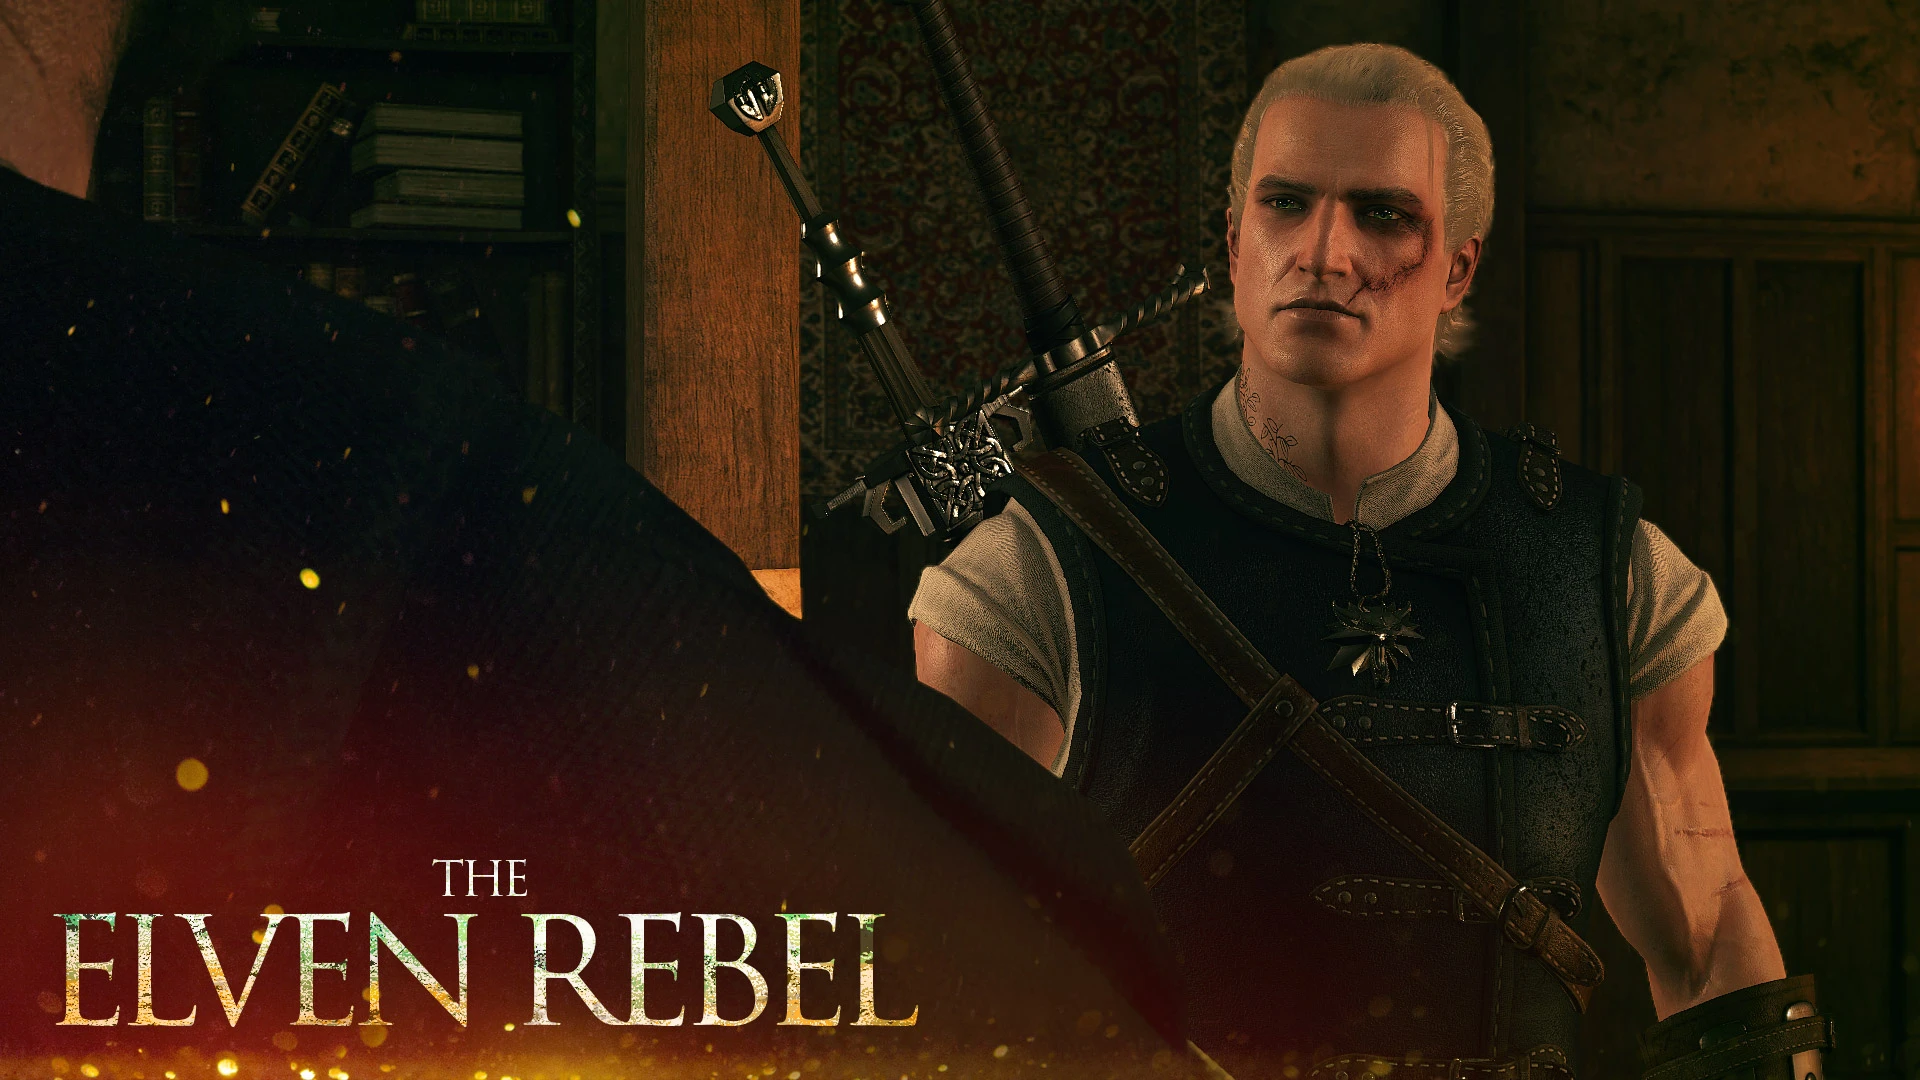 The Elven Rebel Cut